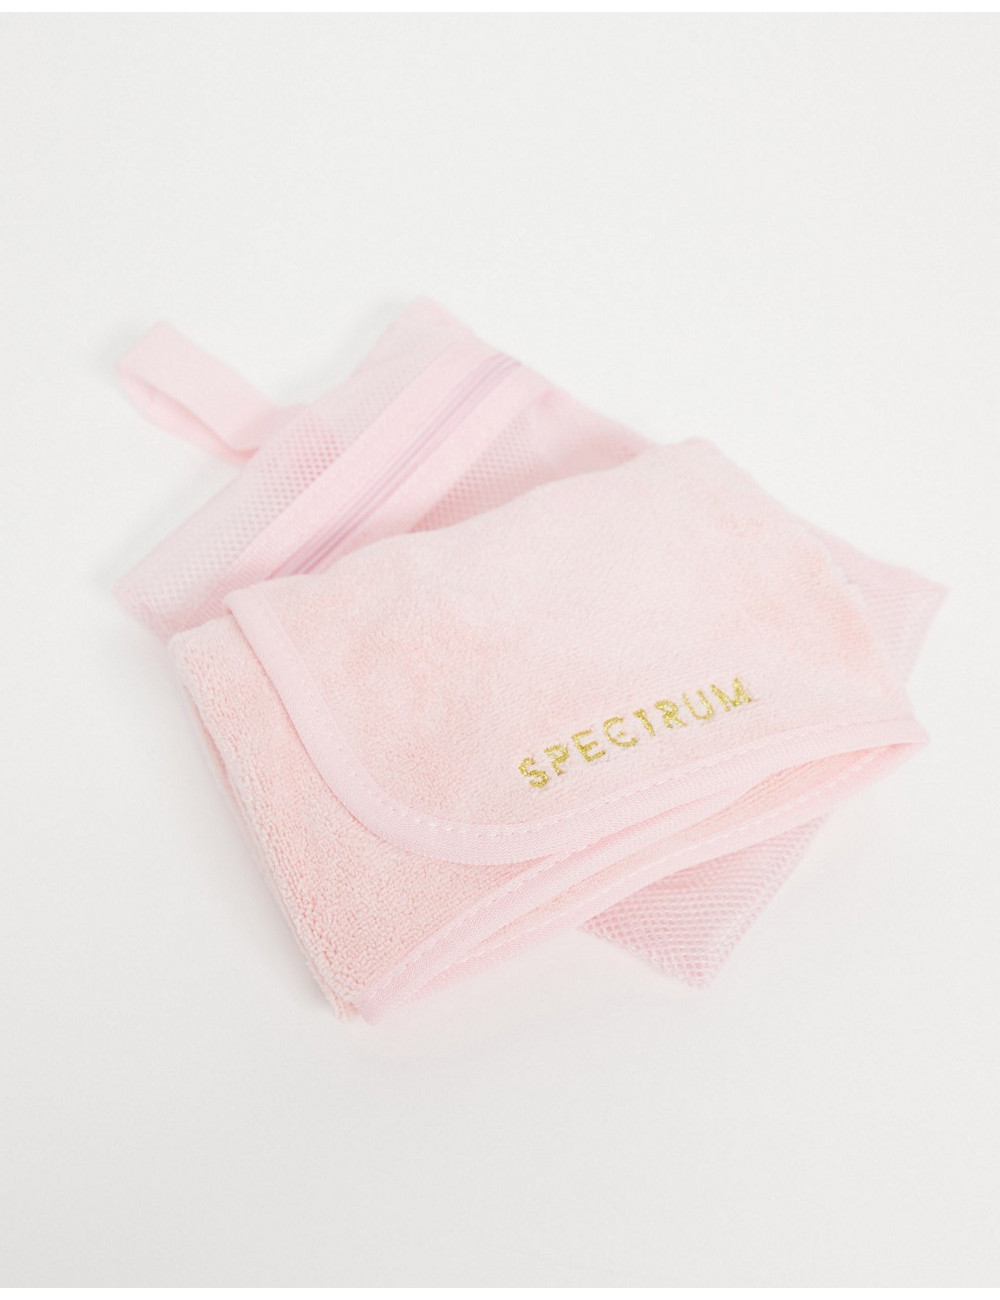 Spectrum Laundrette Towel...